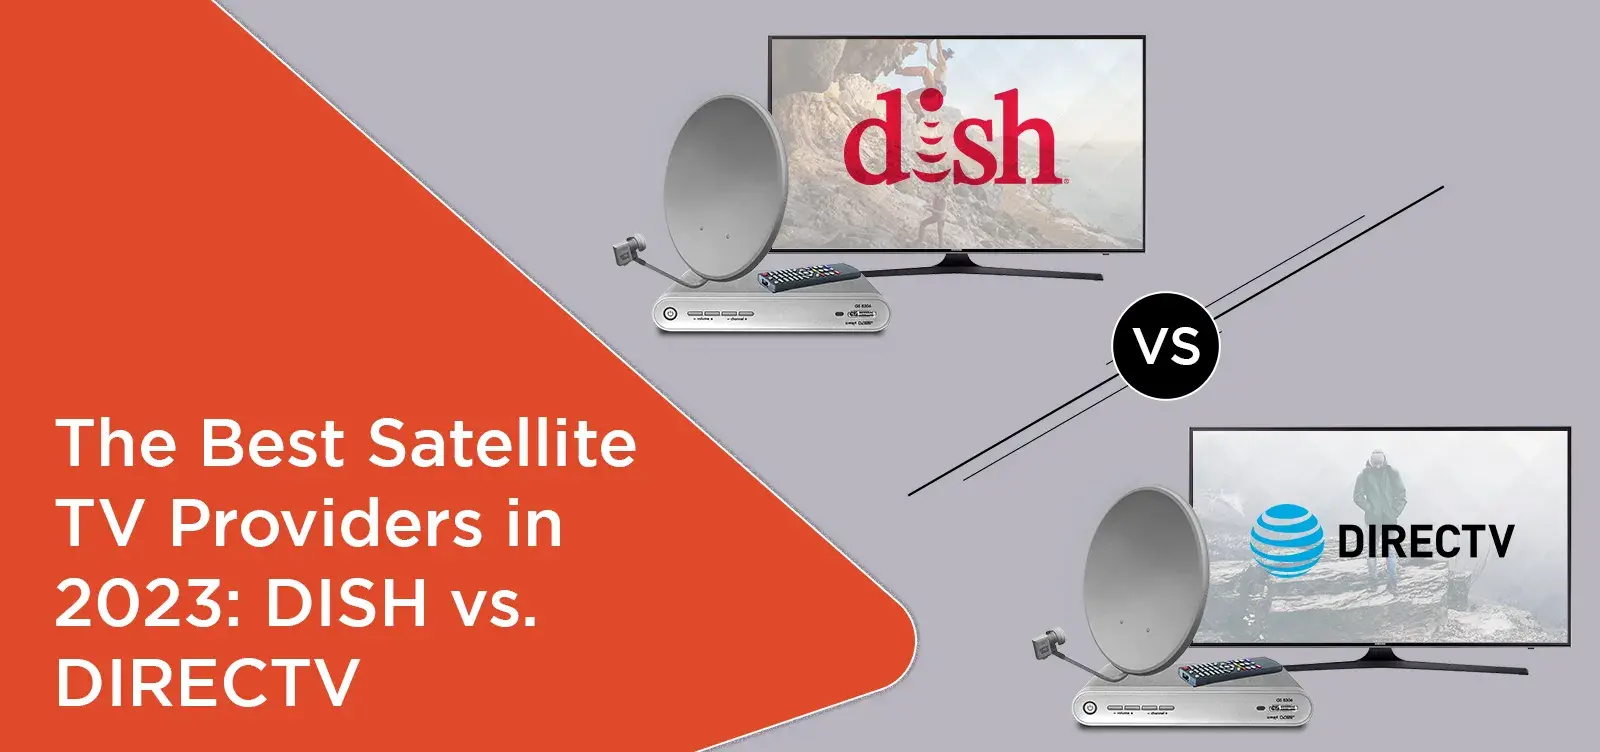 The Best Satellite TV Providers in 2023: DISH vs. DIRECTV